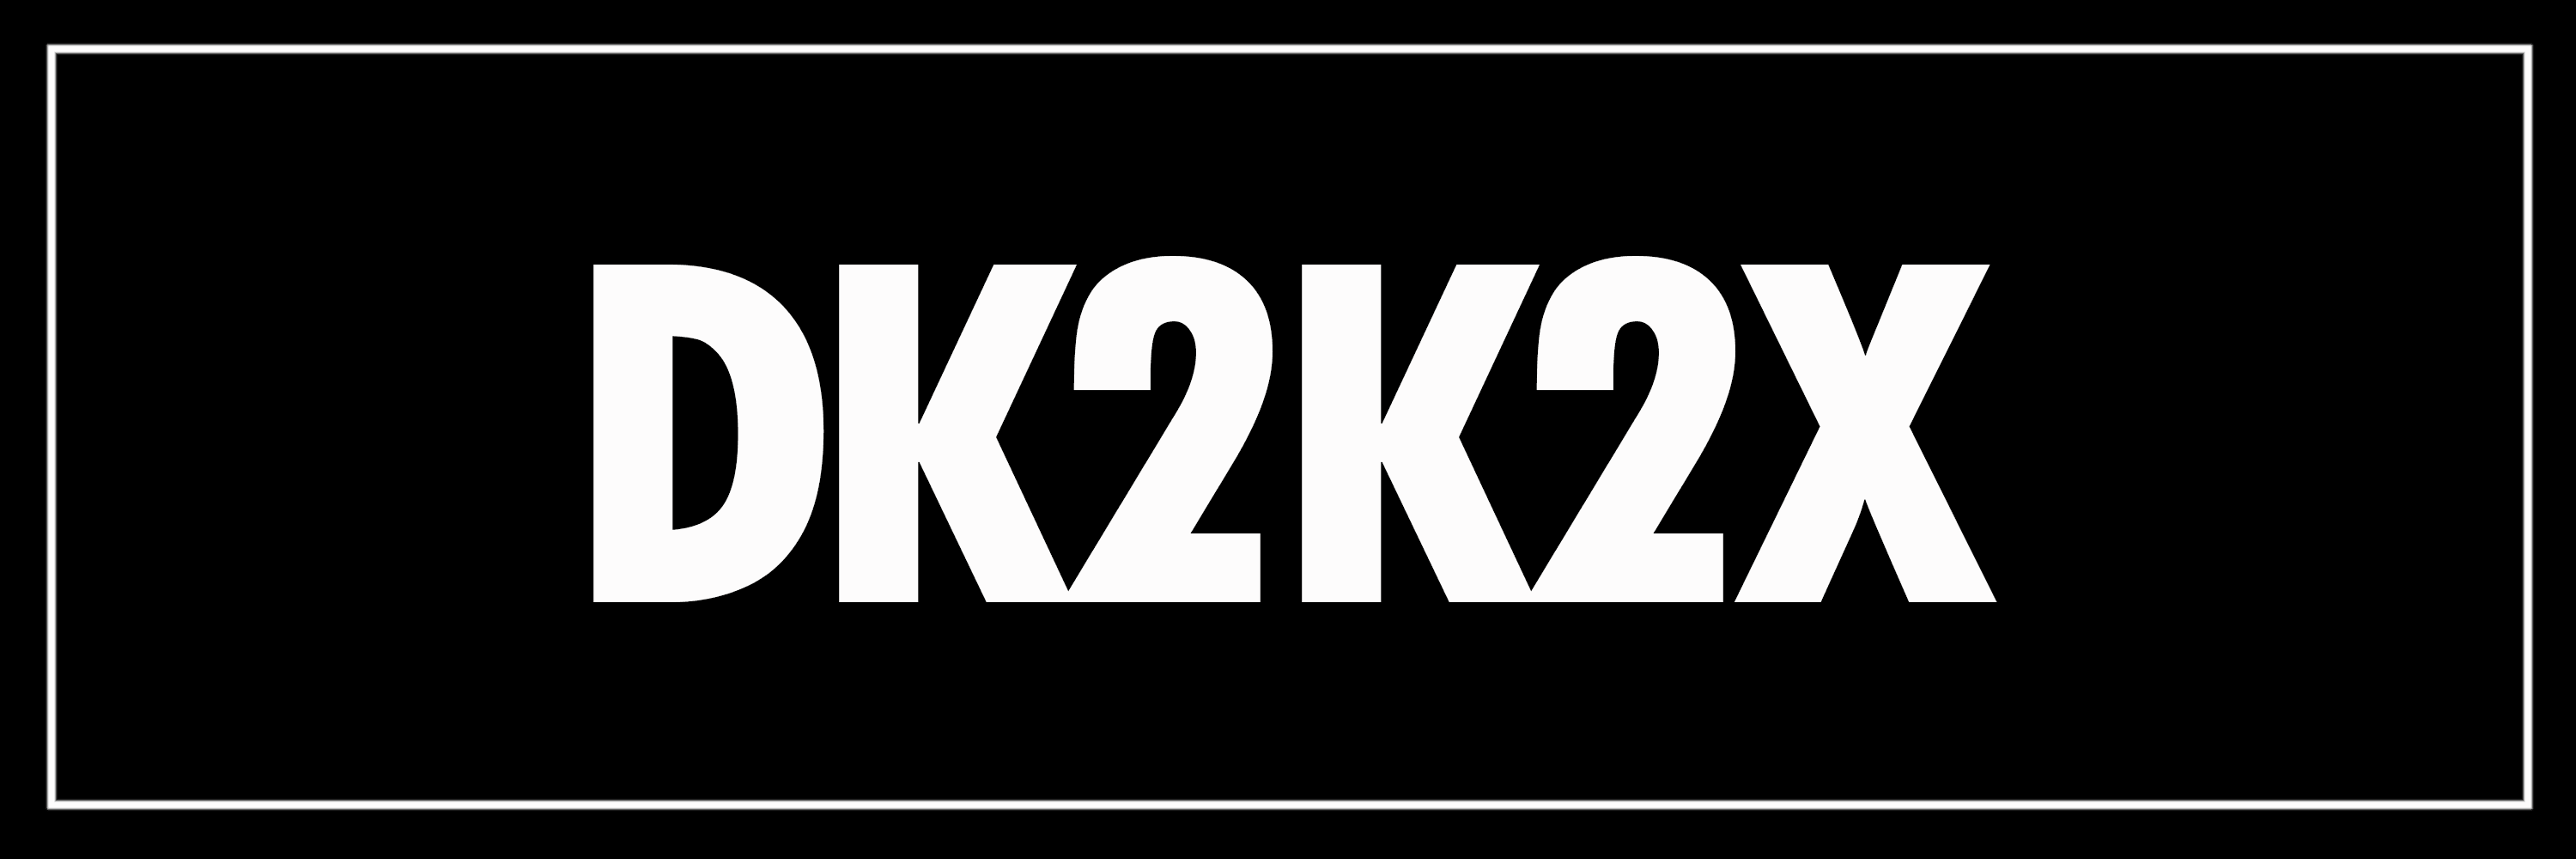 DK2K2X bannière